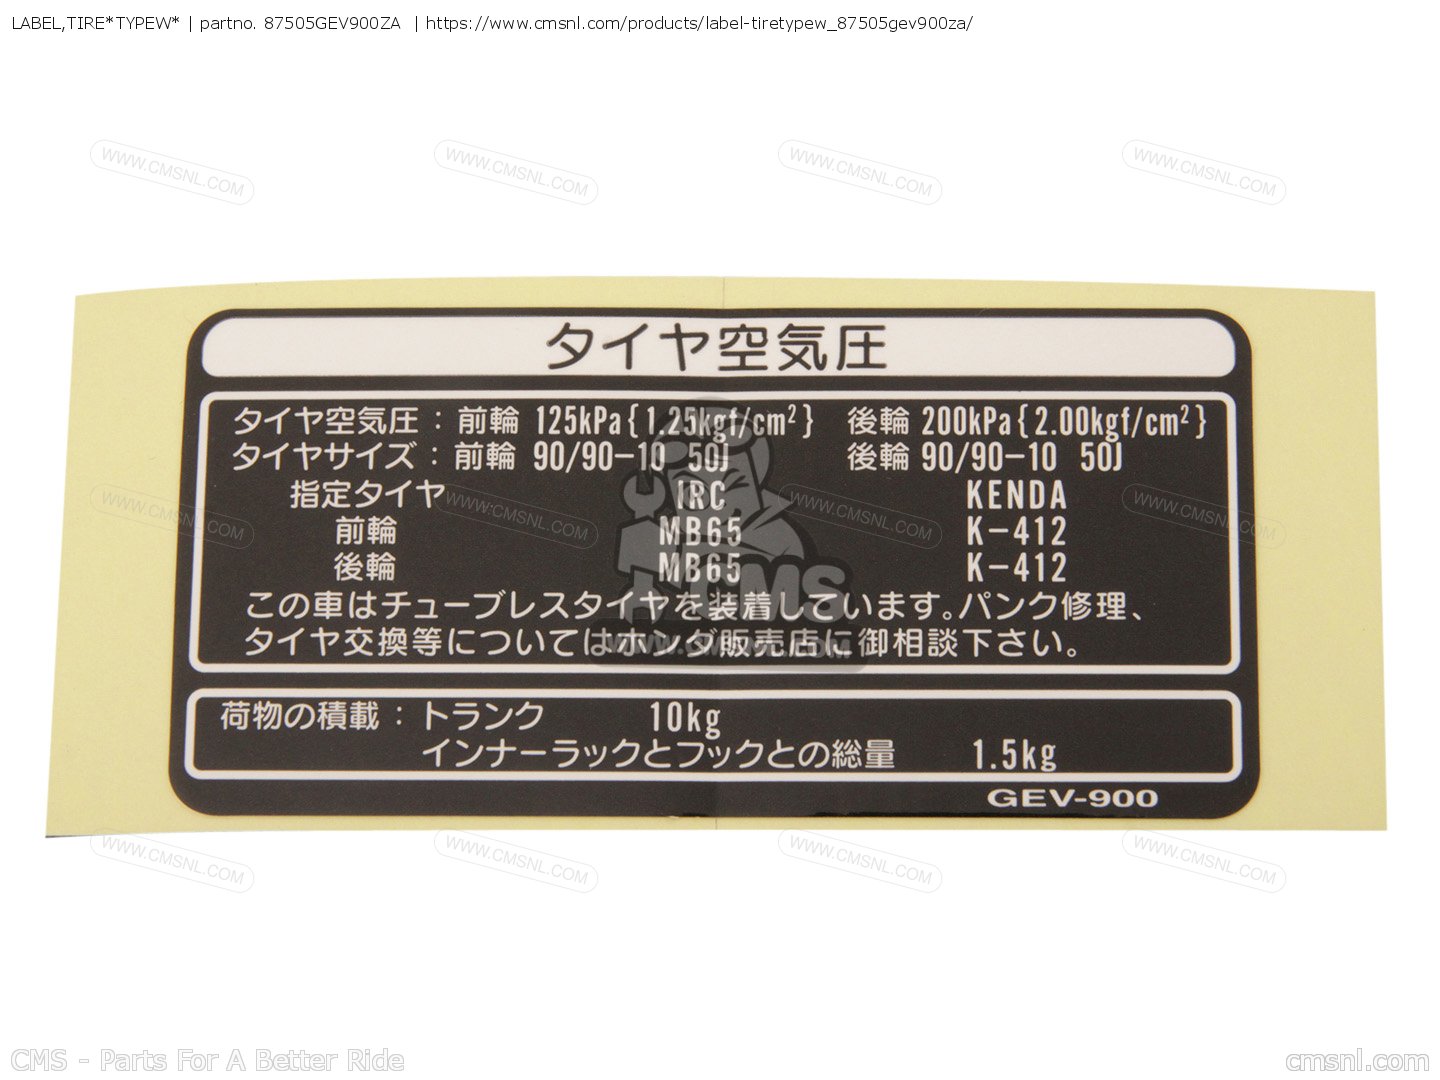 LABEL,TIRE*TYPEW* for SKX50S 2006 (6) SMART DIO Z4 (JAPAN) AF63 